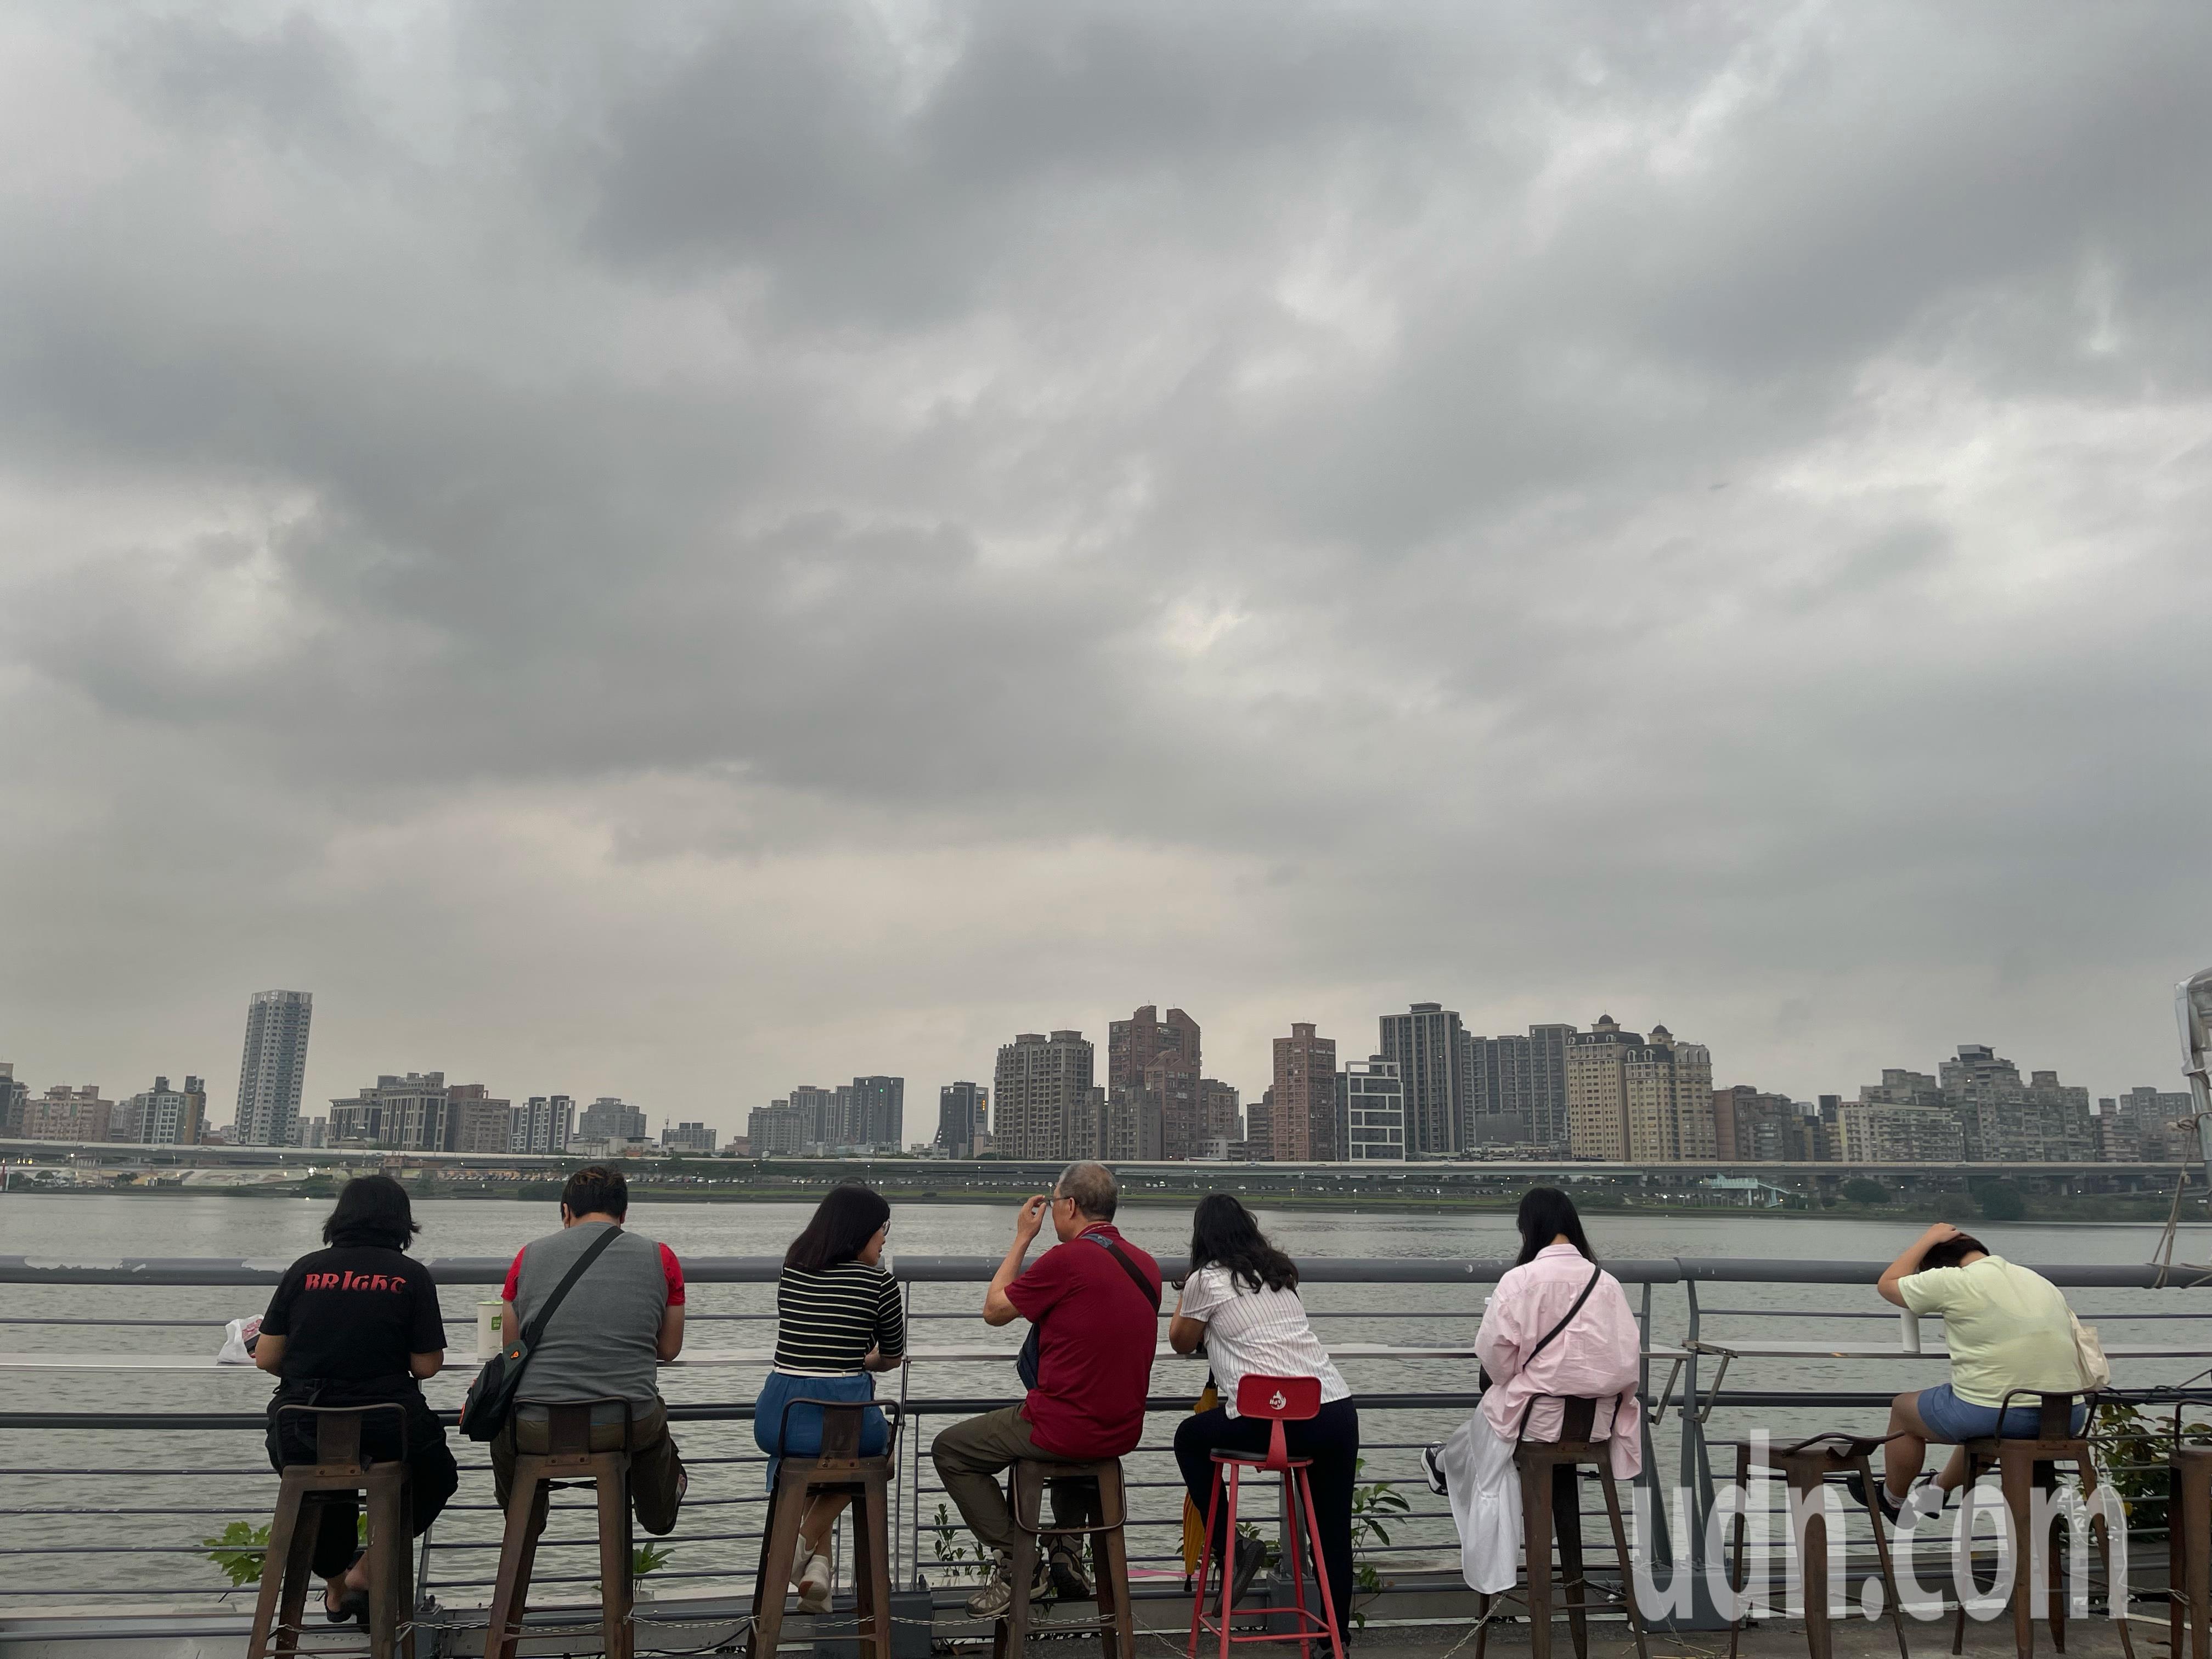 受锋面接近影响，台北市傍晚时天空出现乌云，但也带来些许凉爽微风，许多民众享受徐徐凉风。记者潘俊宏／摄影